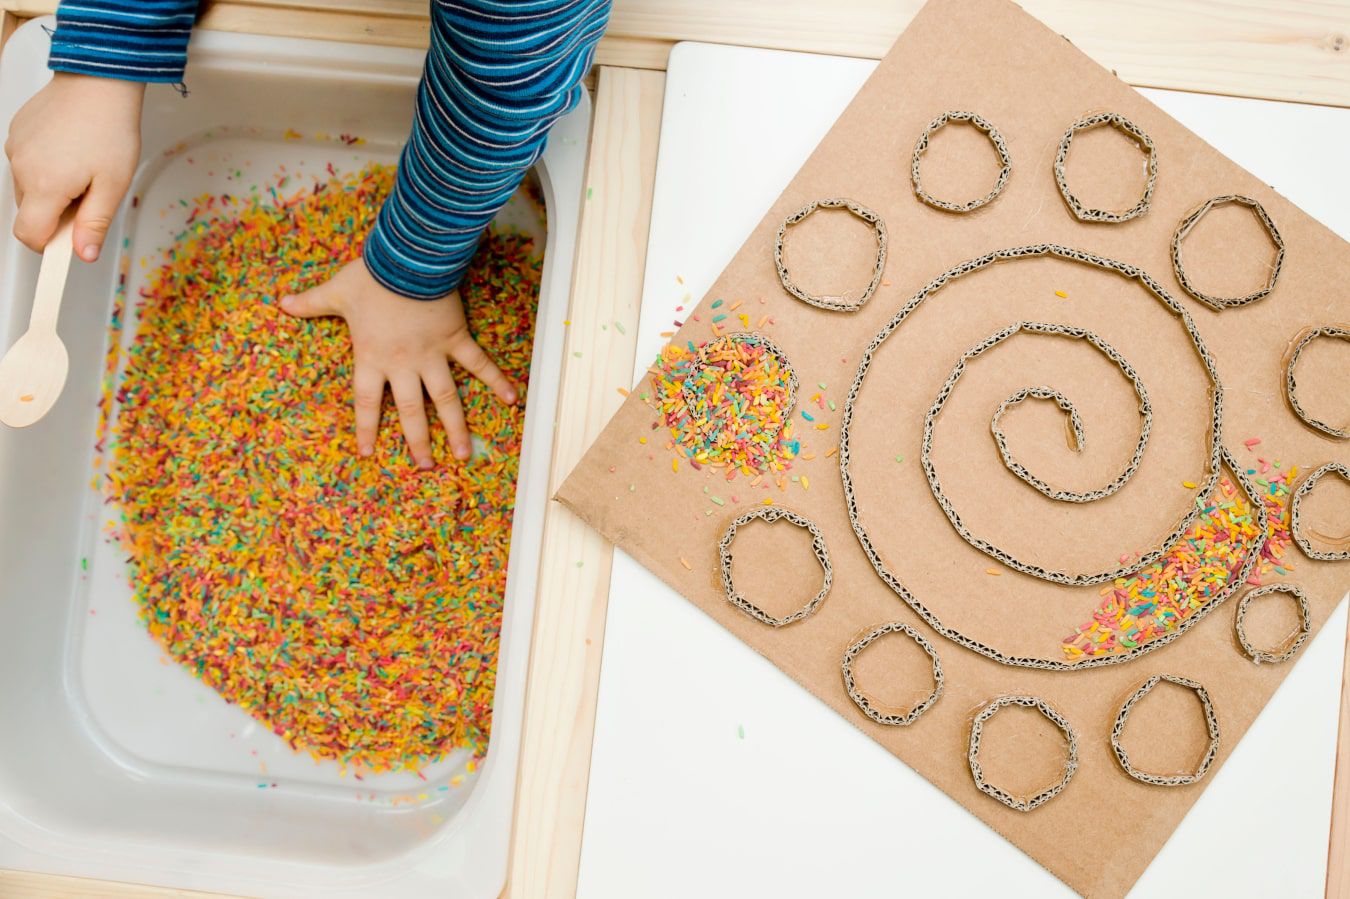 Las manos del niño conocen una textura nueva: caramelos de colores y virutas de chocolate, al lado hay un laberinto de cartón hecho en casa